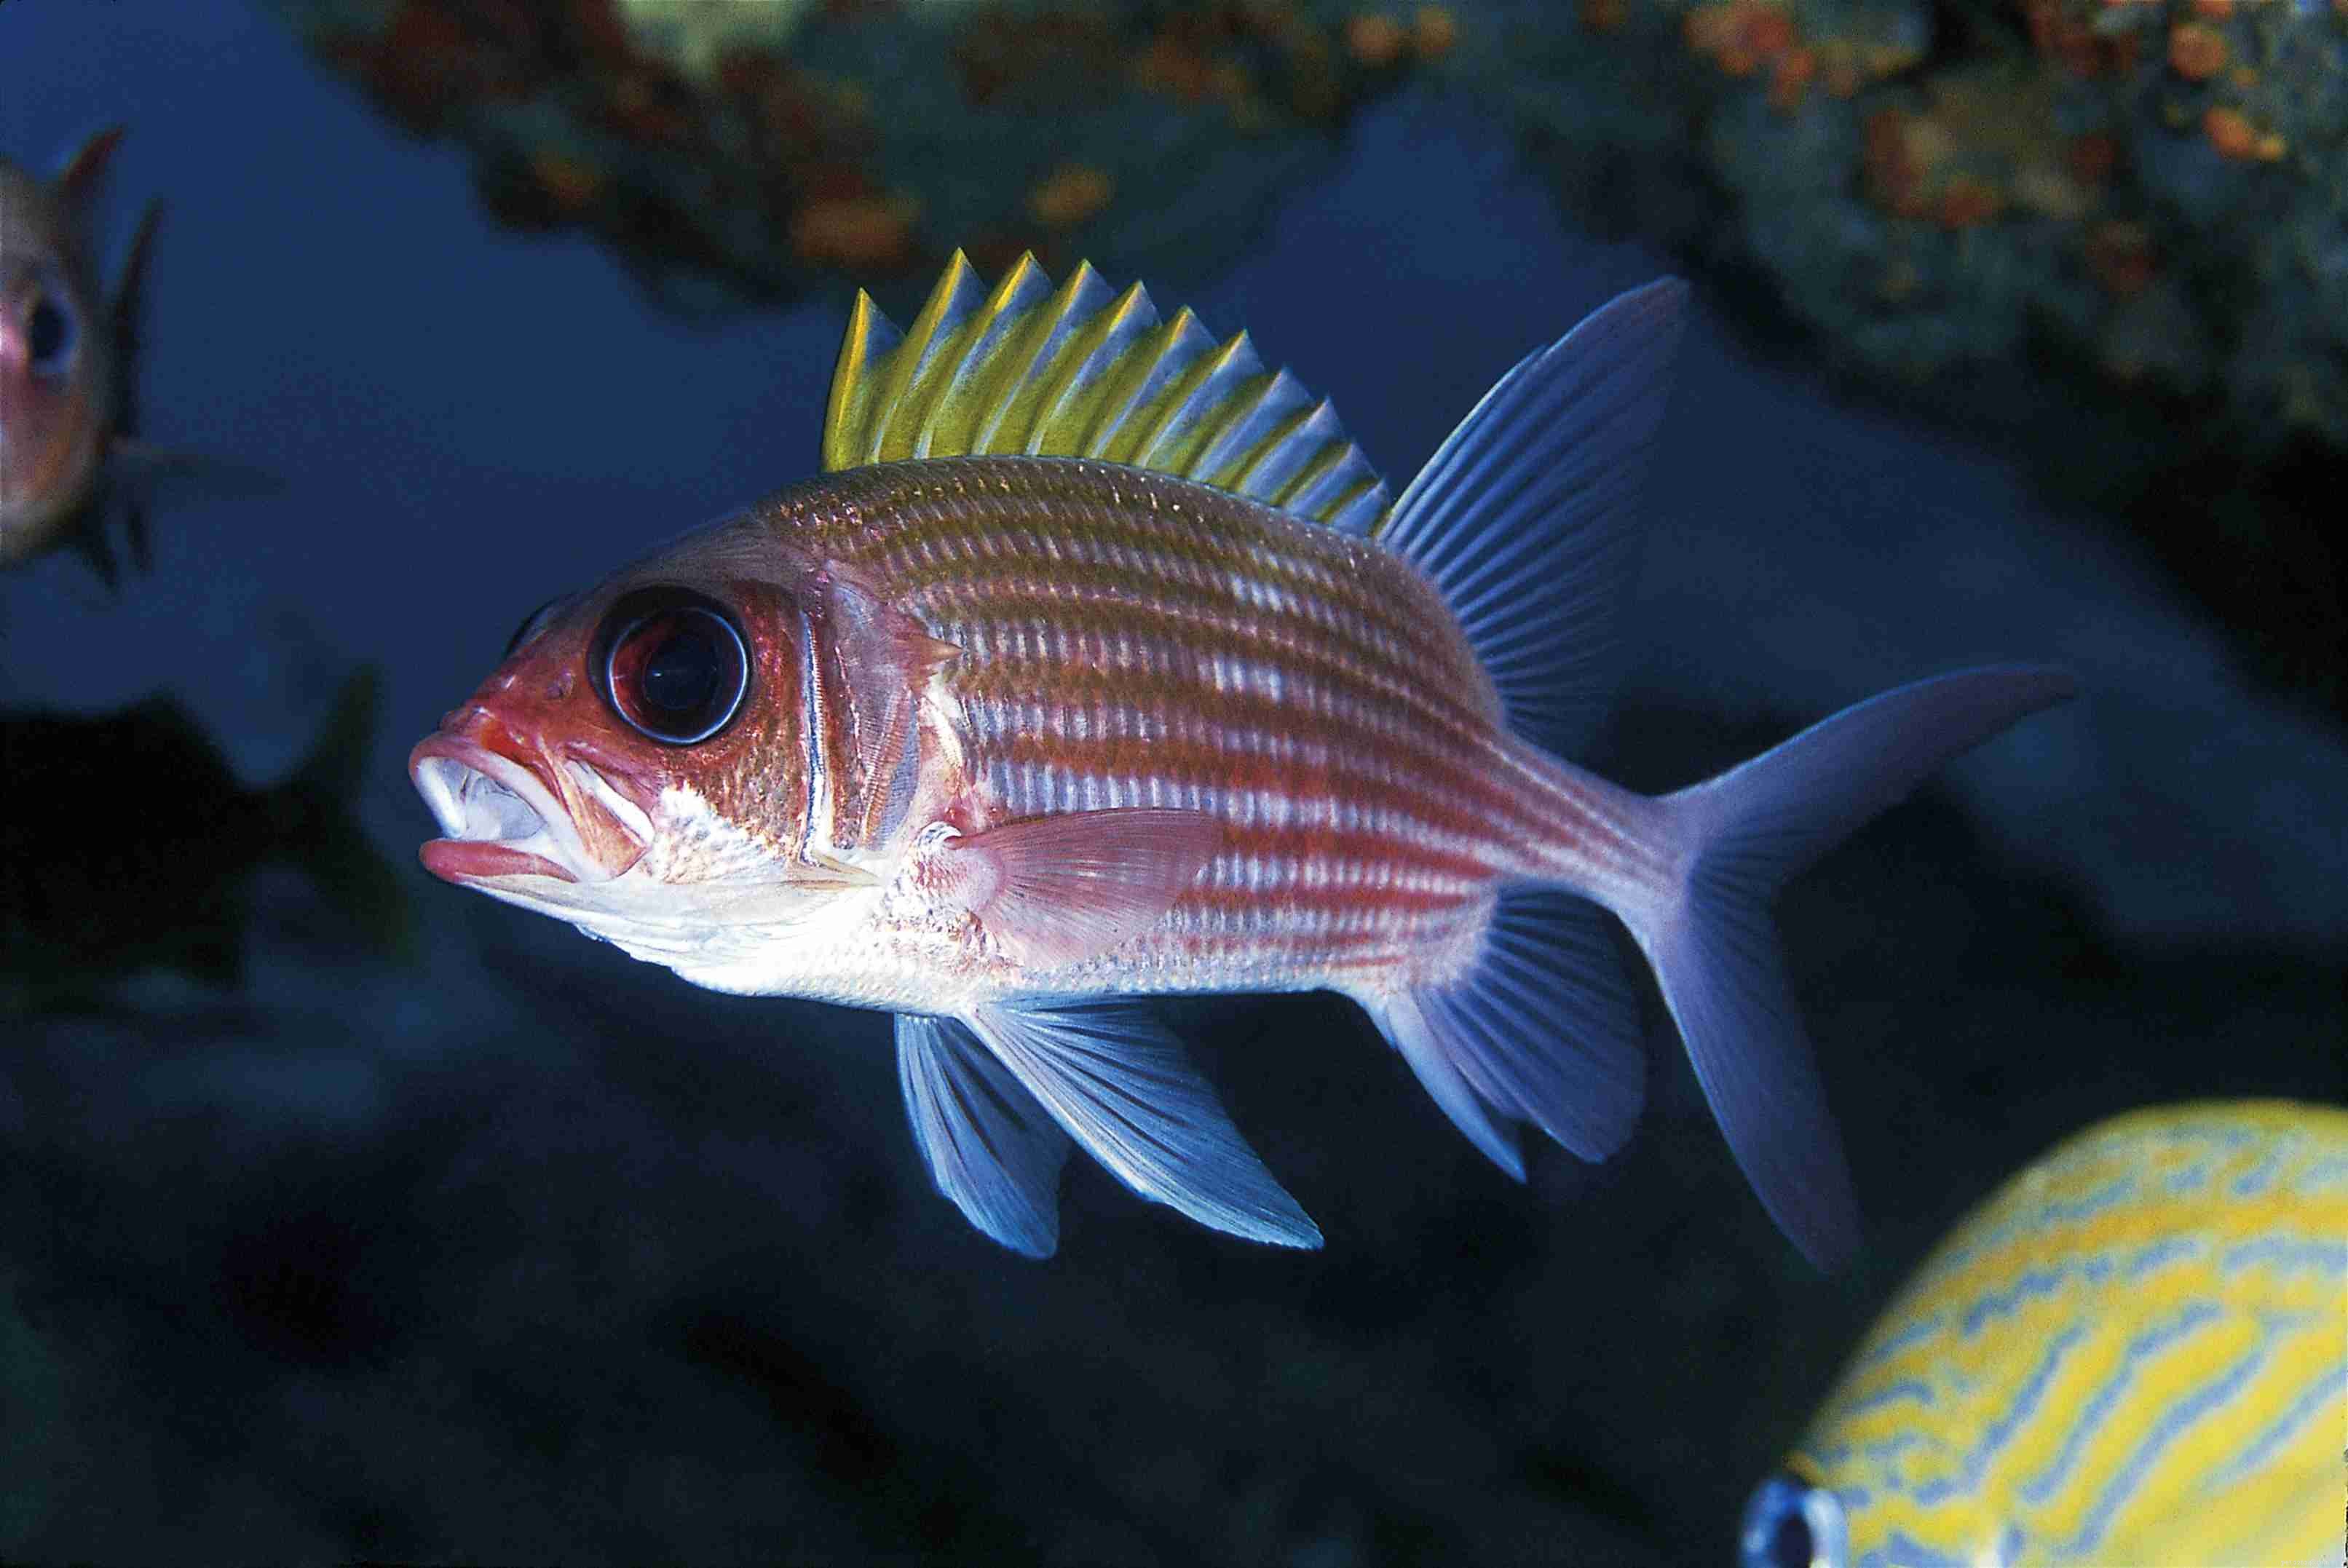 Attenzione ai pesci velenosi negli acquari marini